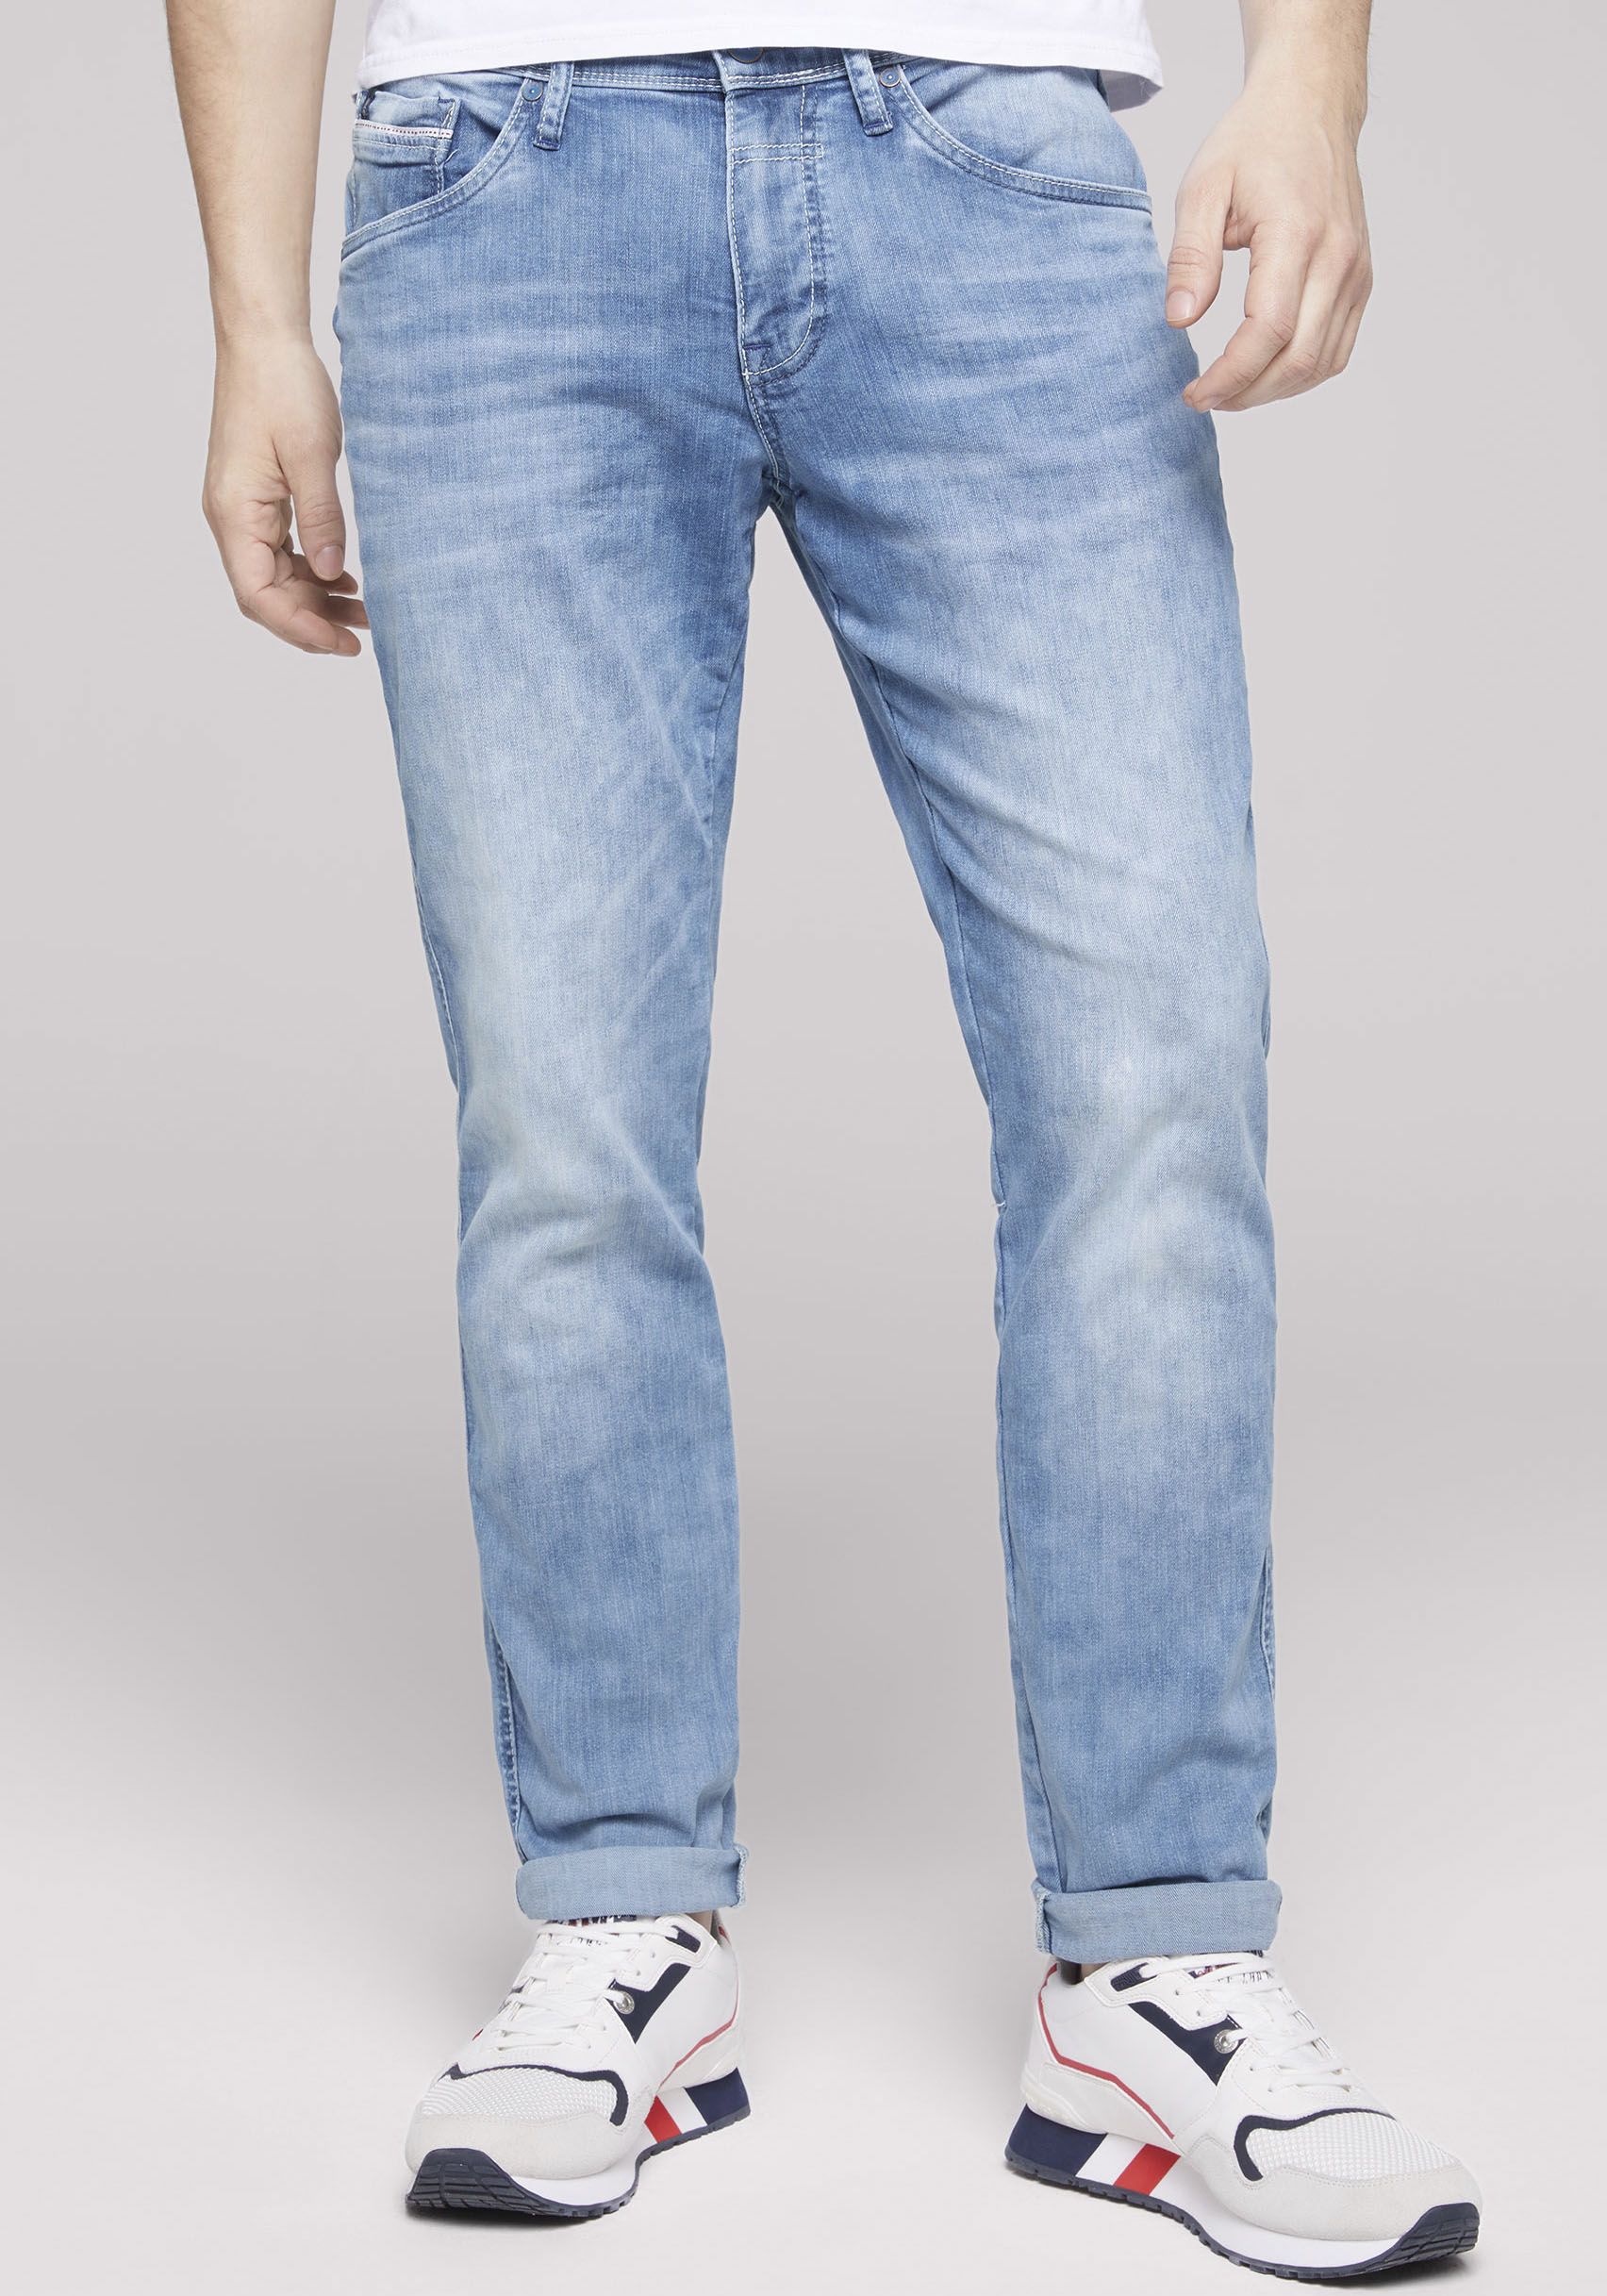 CAMP DAVID 5-Pocket-Jeans, mit dünnen Nähten von camp david